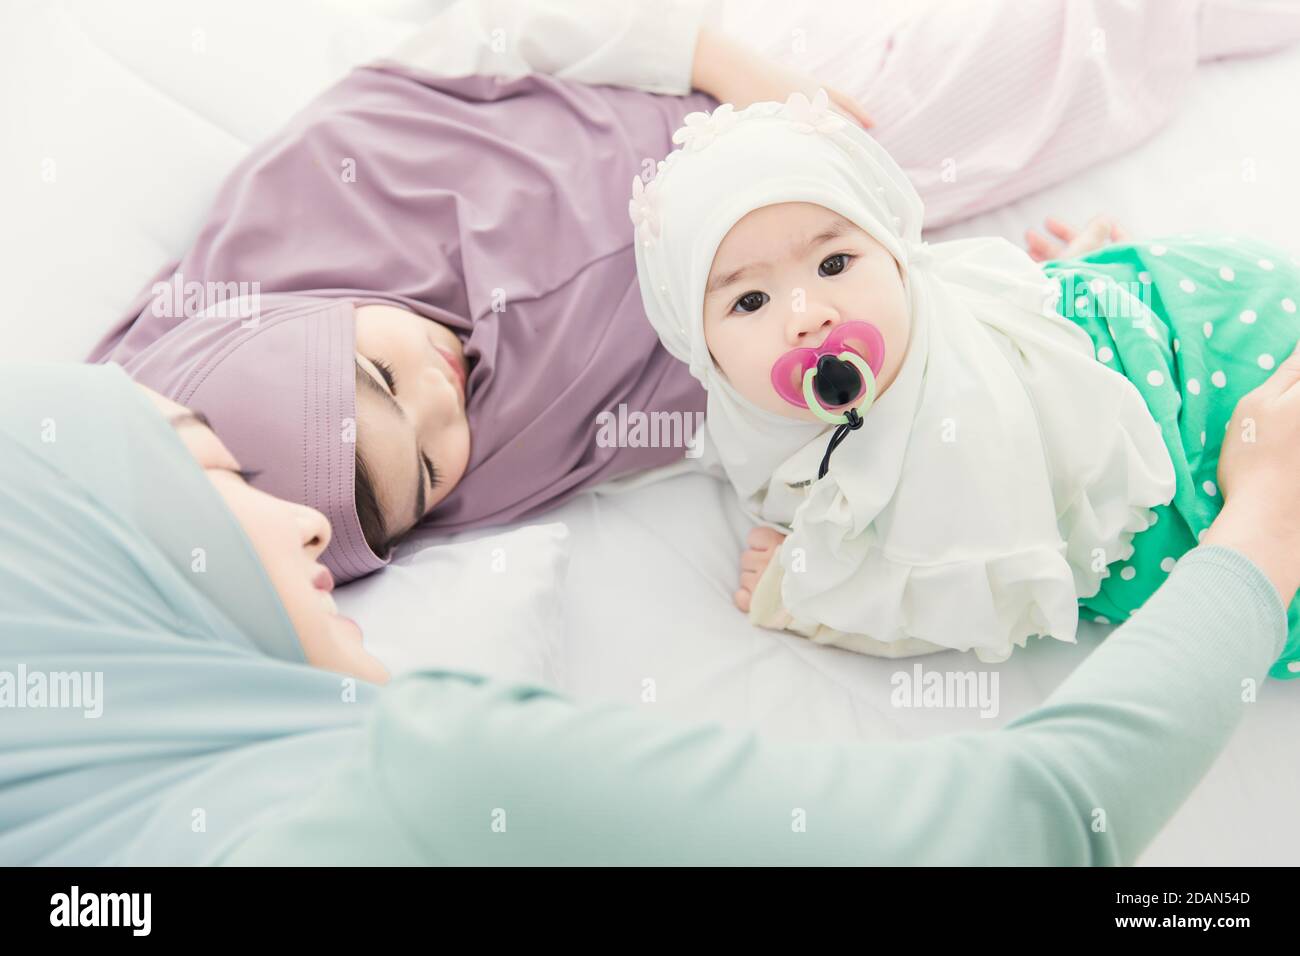 Muslimische Familie Baby mit älteren Schwester und Mutter zusammen auf dem Bett zu Hause liegen. Stockfoto